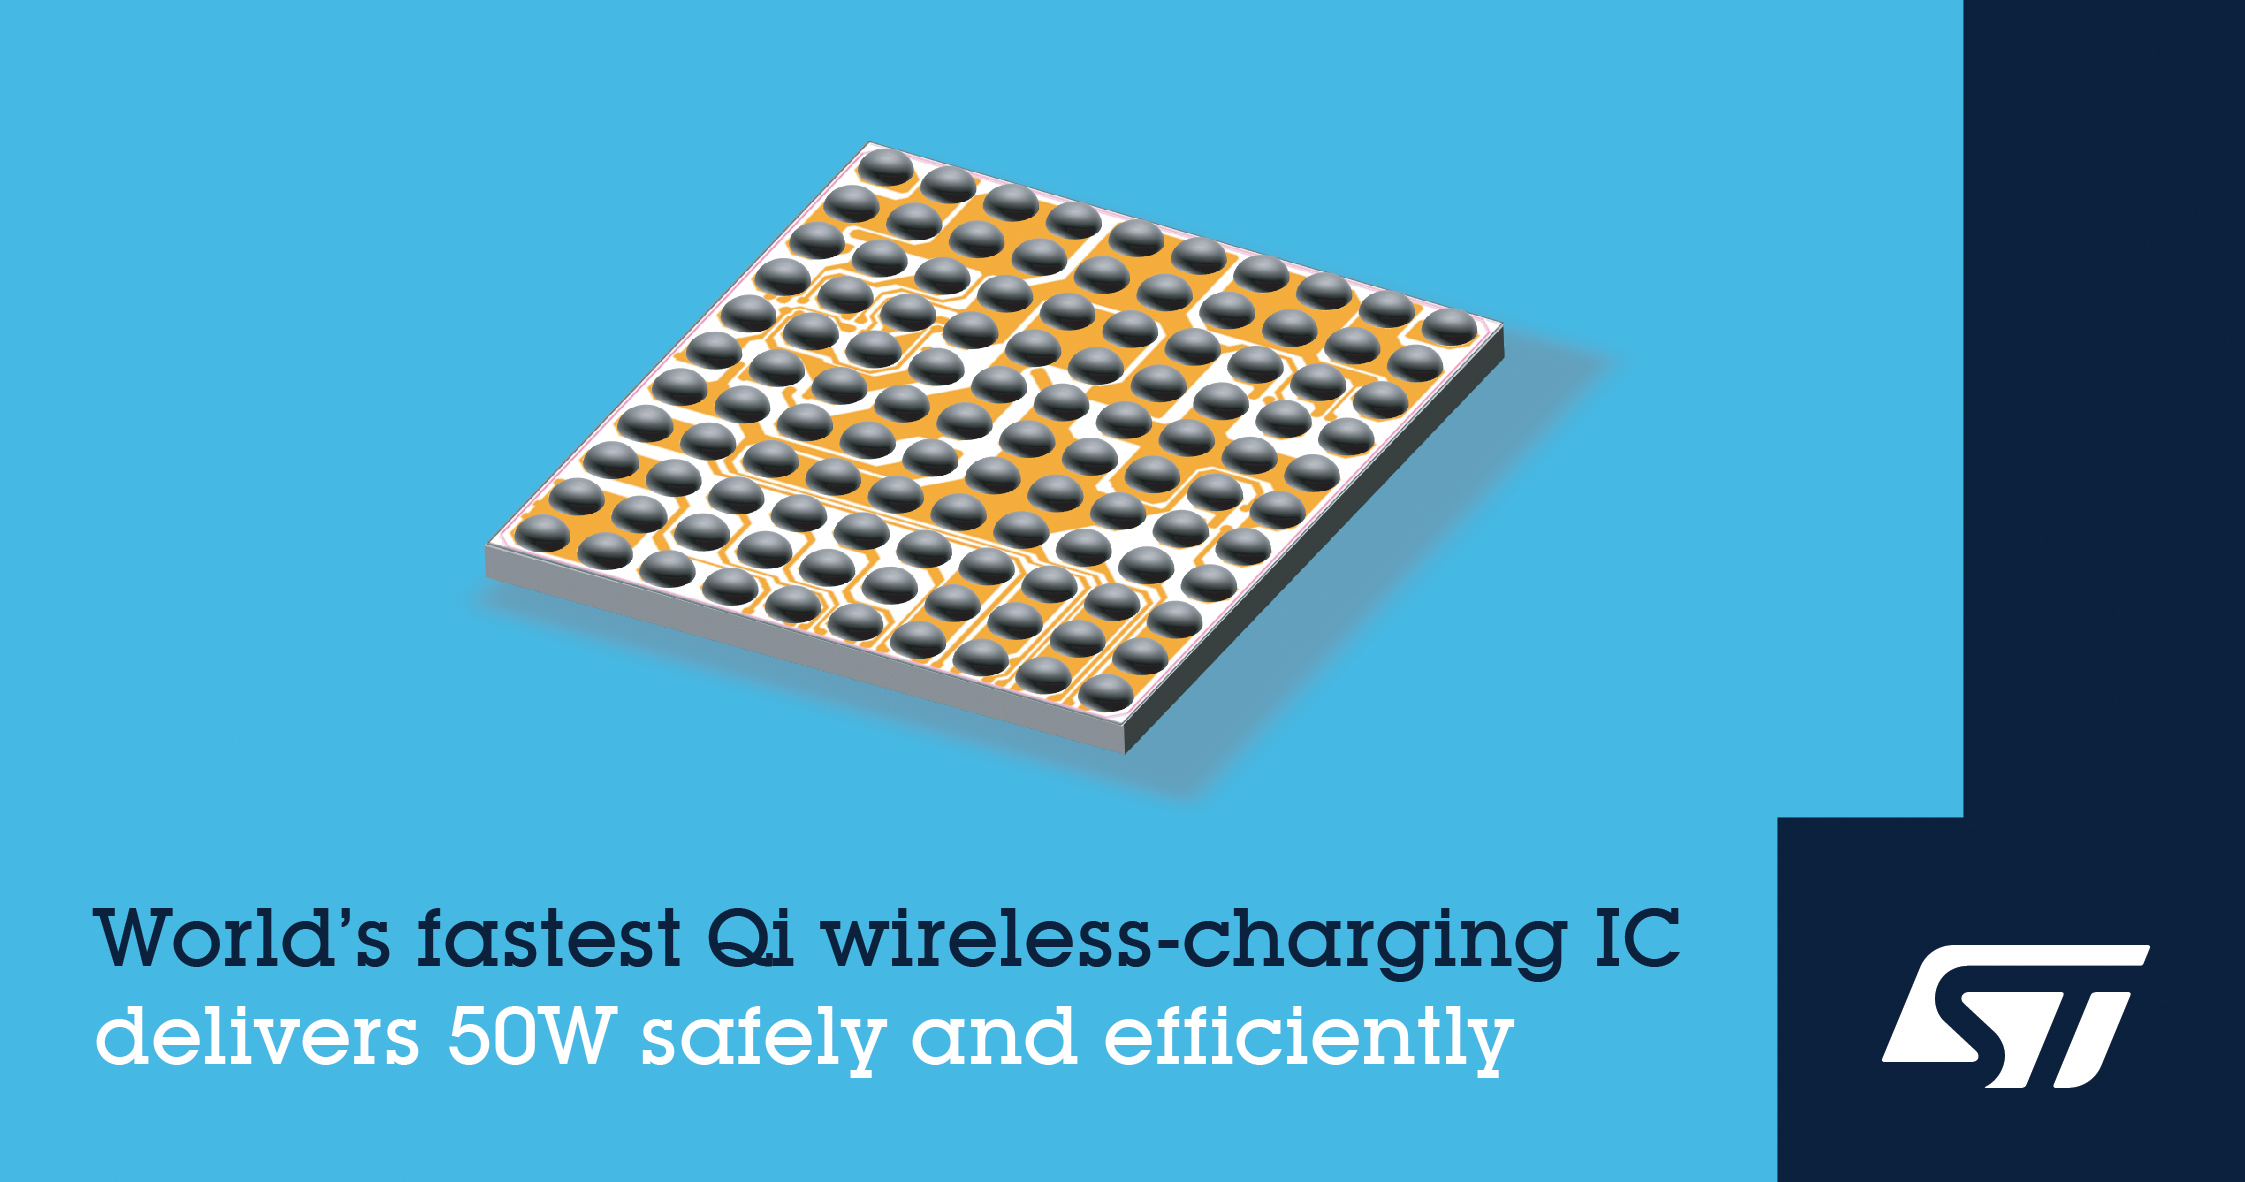 STマイクロエレクトロニクス、超高速充電を可能にするQi規格準拠 50Wワイヤレス充電ICを発表